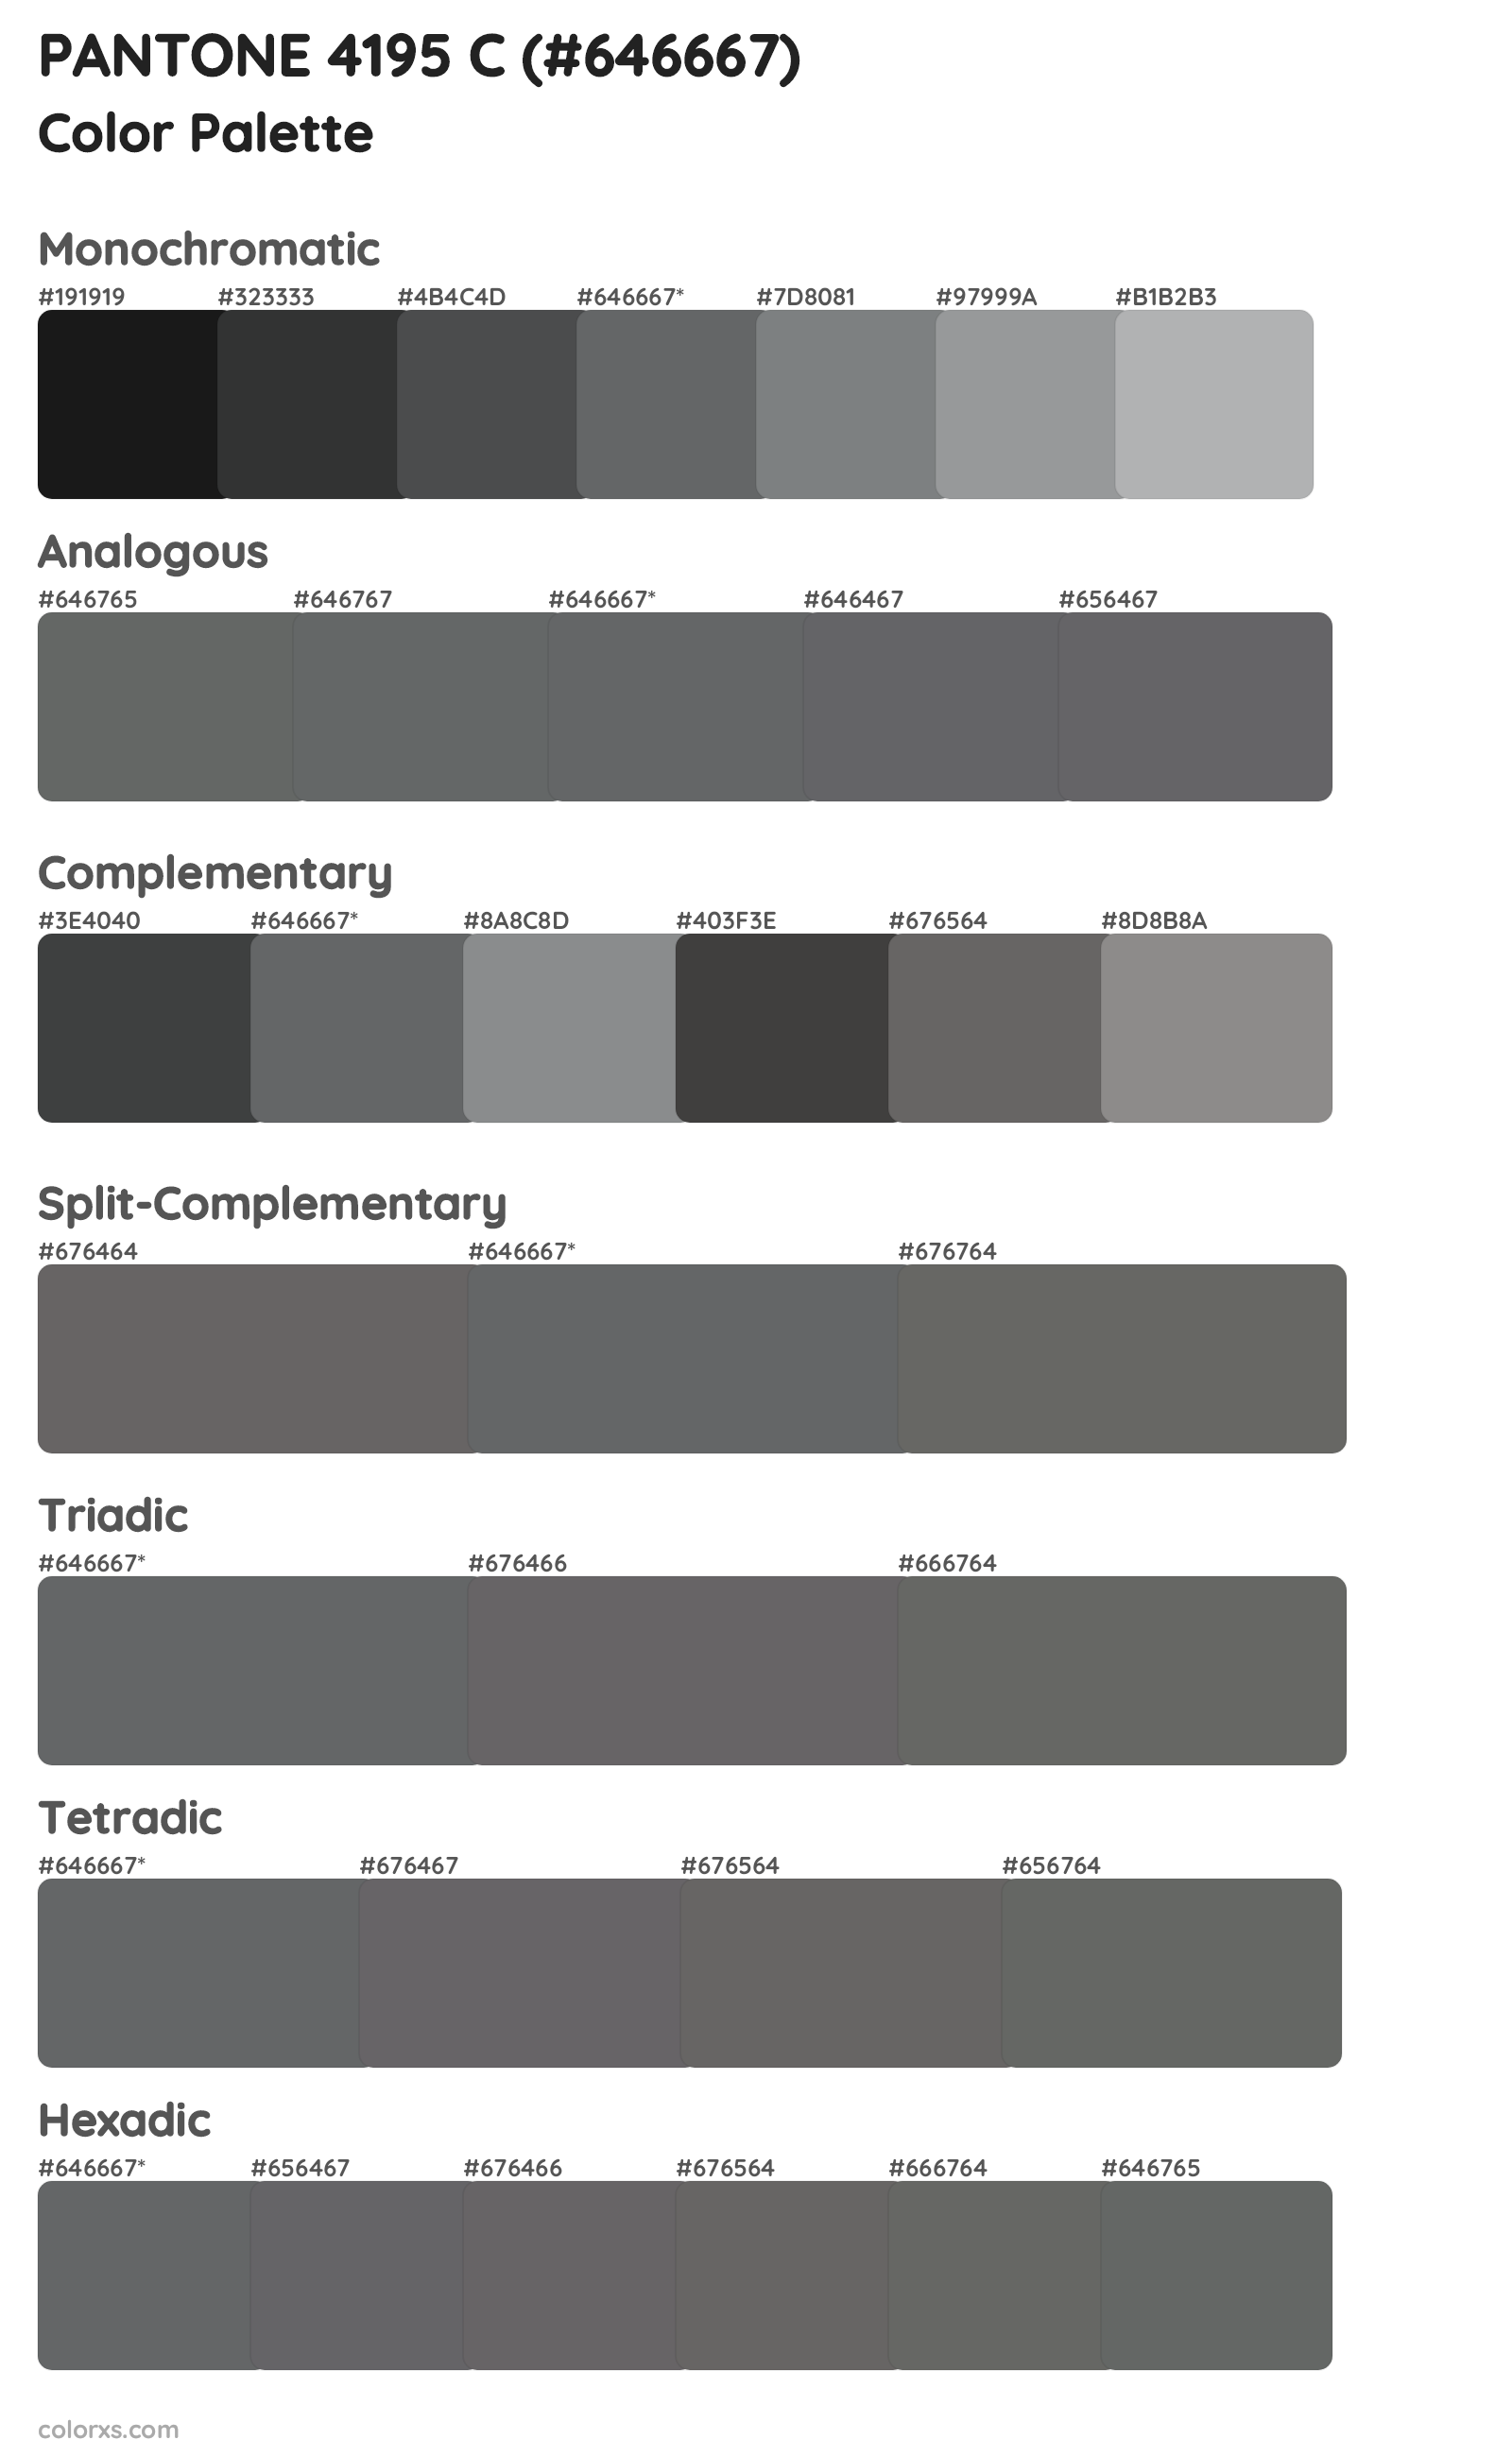 PANTONE 4195 C Color Scheme Palettes